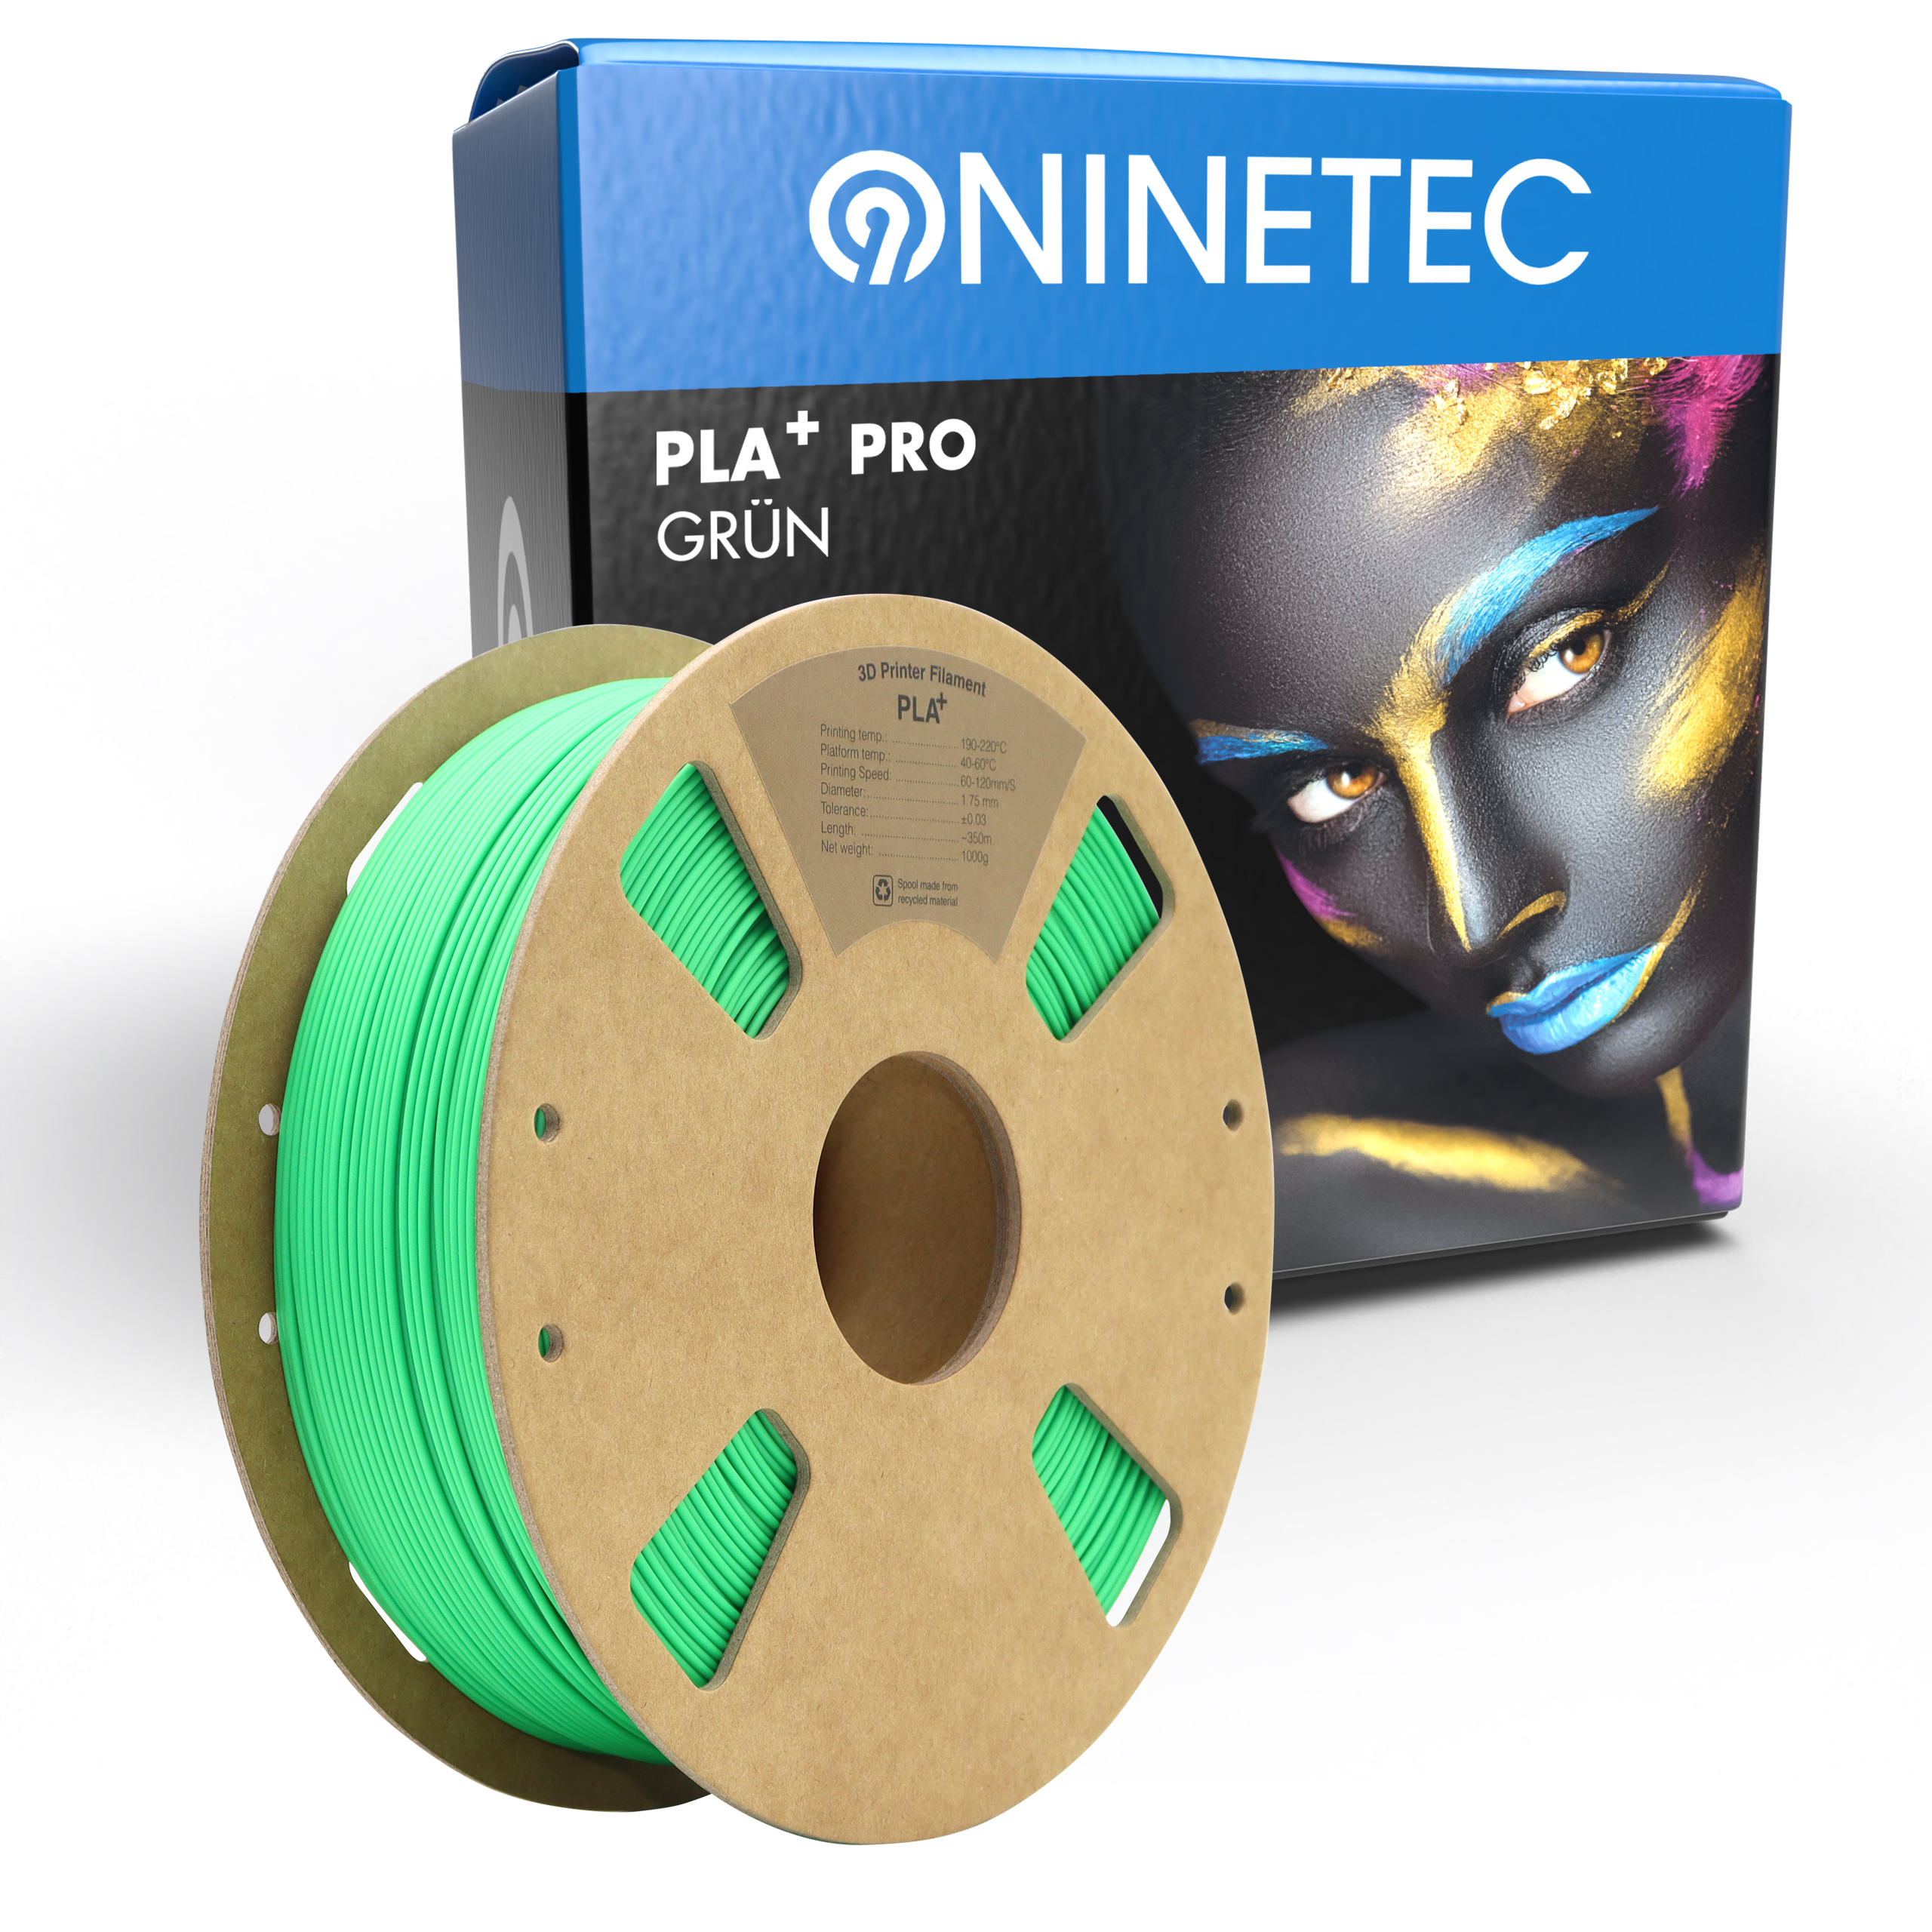 Grün PLA+ PRO Filament NINETEC